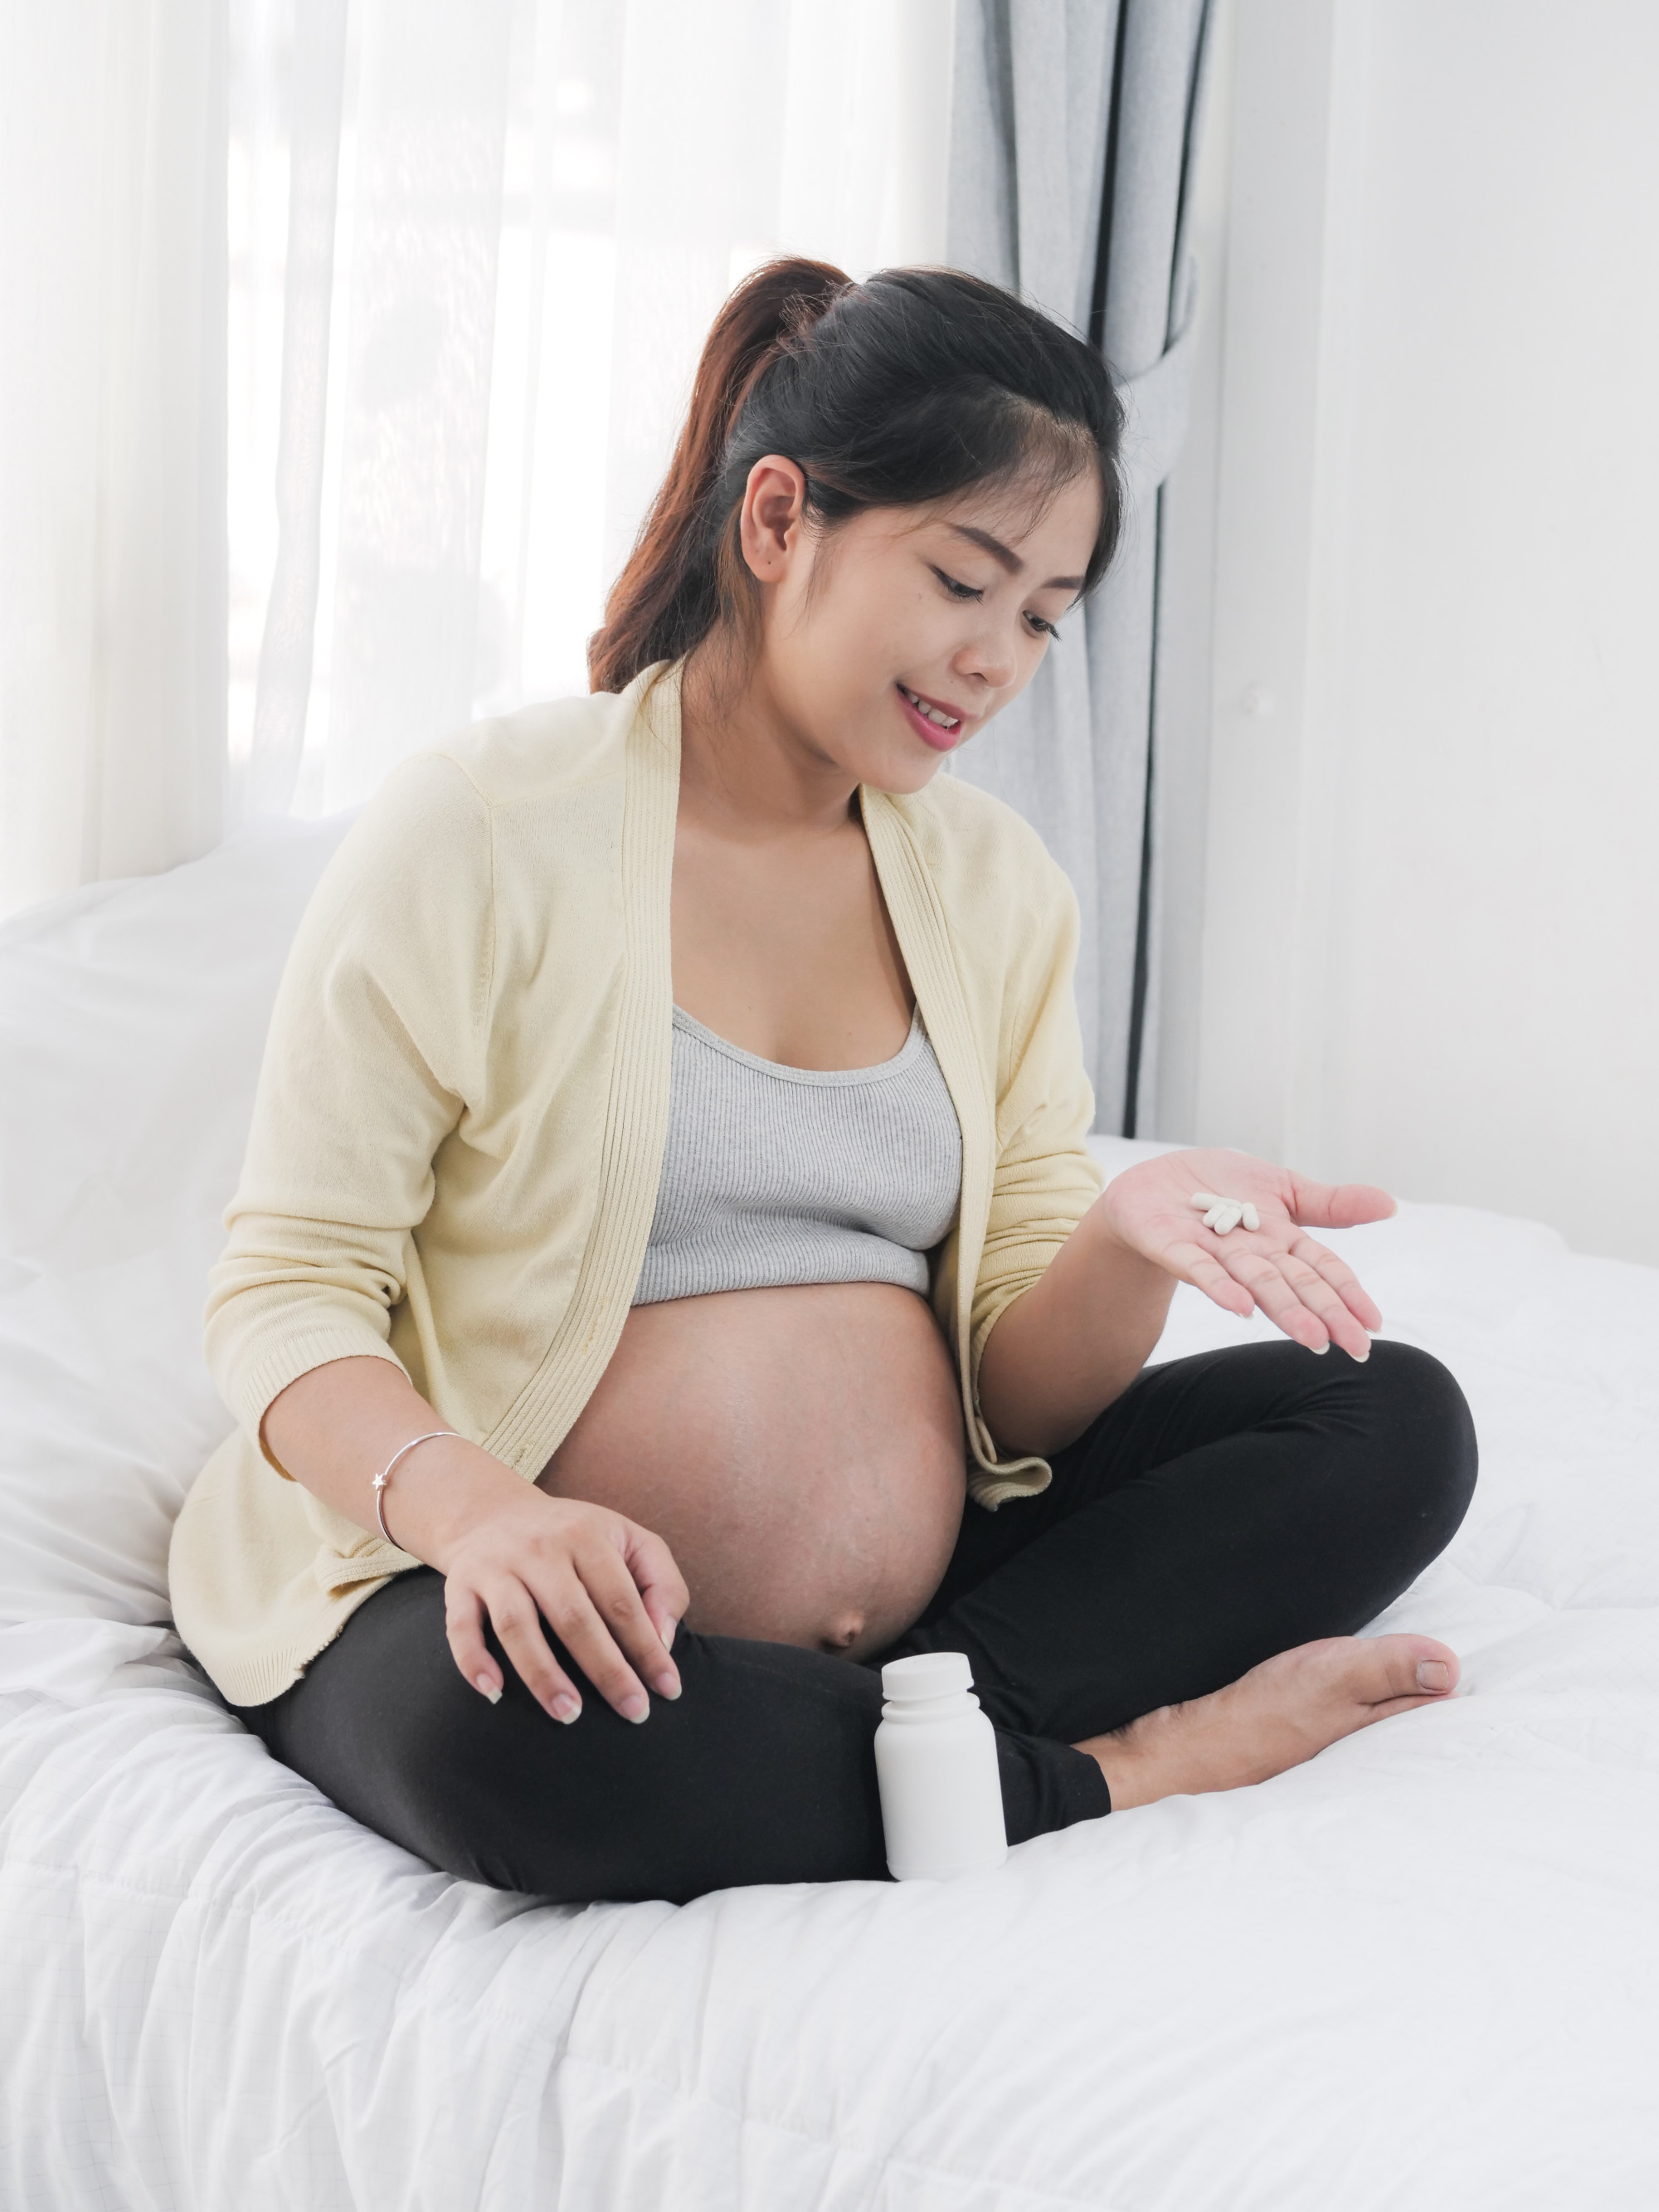 Phụ nữ mang thai có thể chỉ bổ sung axit folic hoặc ăn các sản phẩm ngũ cốc tăng cường axit folic hơn là vitamin trước khi sinh.  Ảnh: Shutterstock